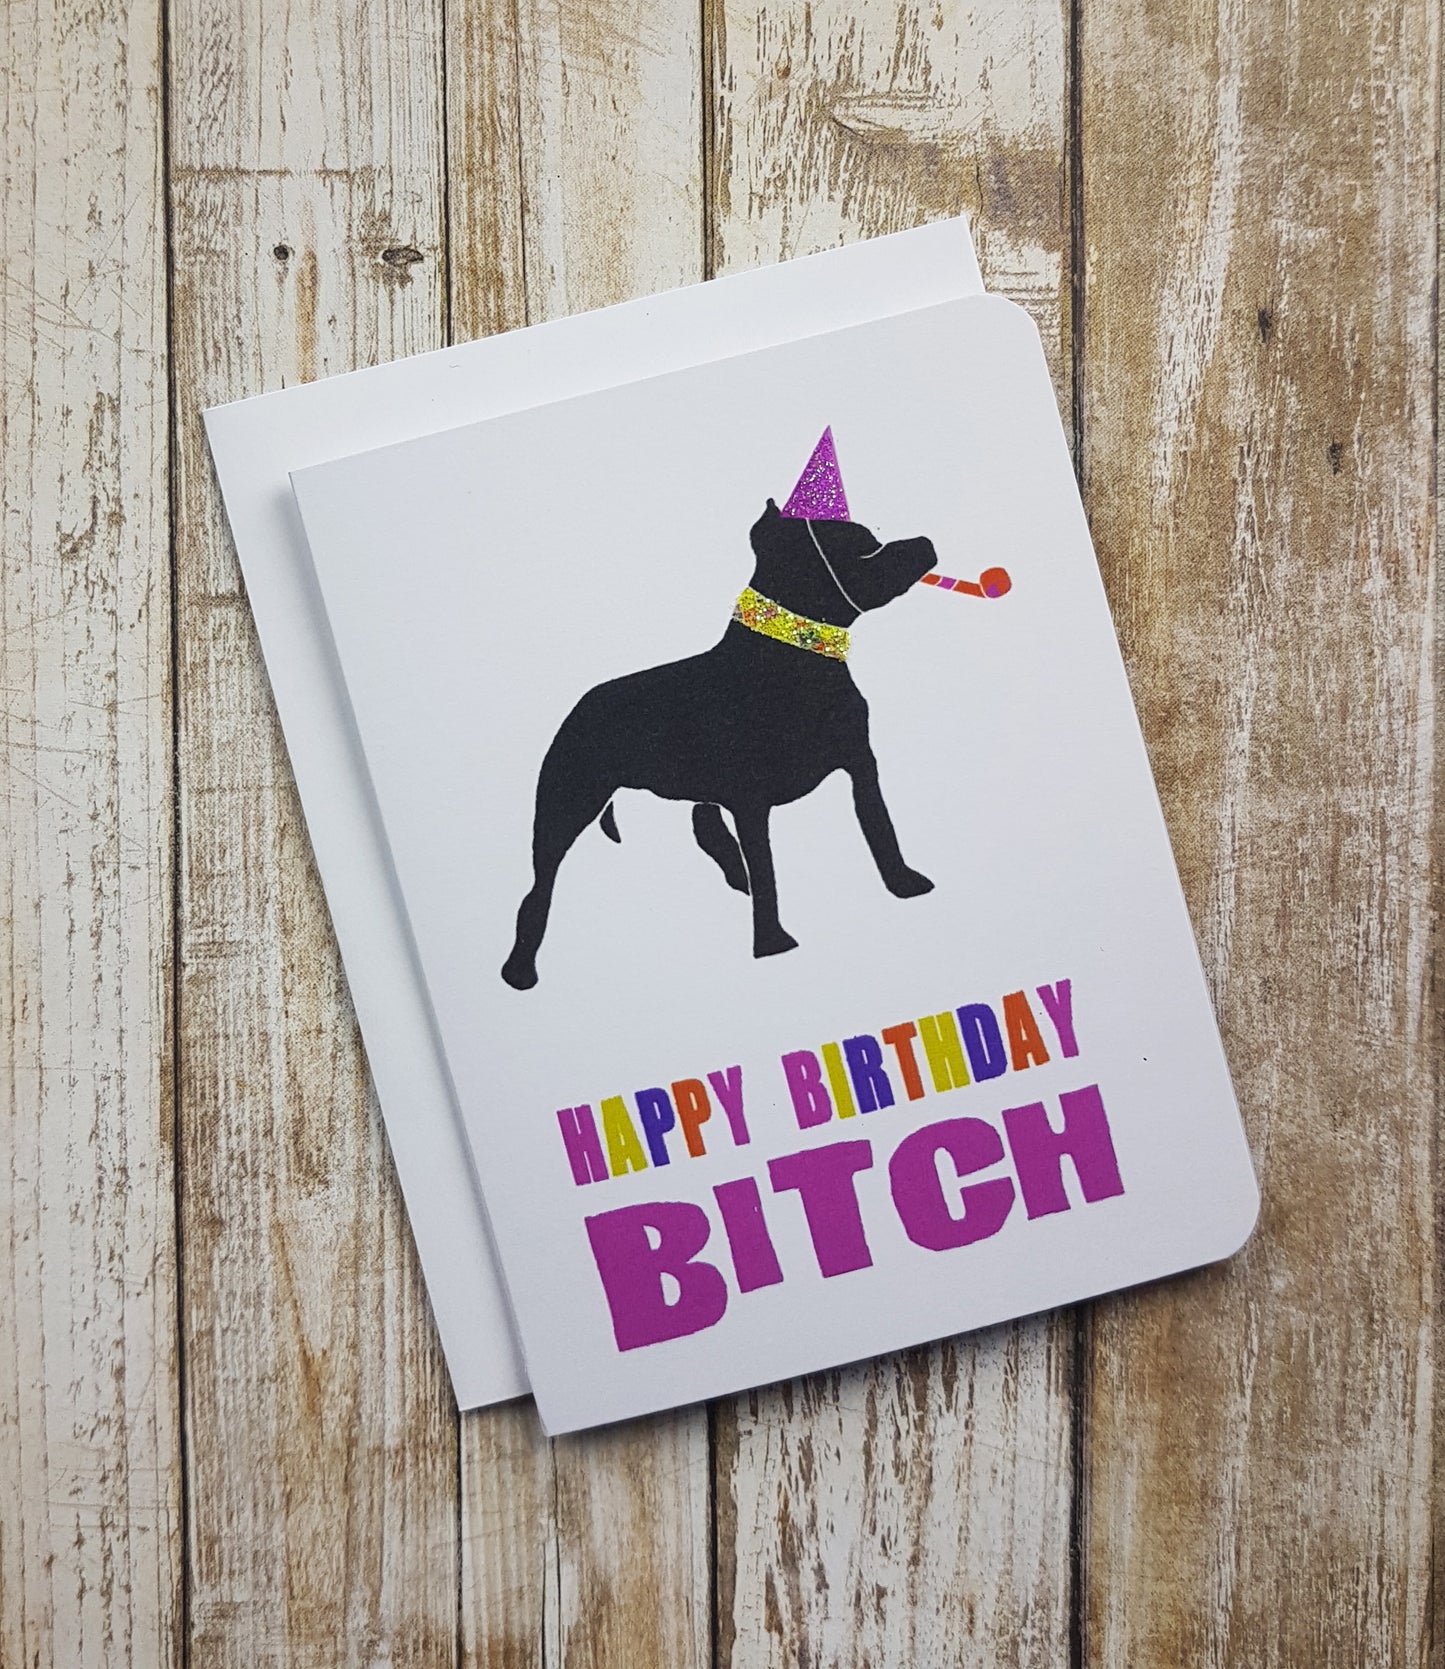 Happy Birthday B*tch Card